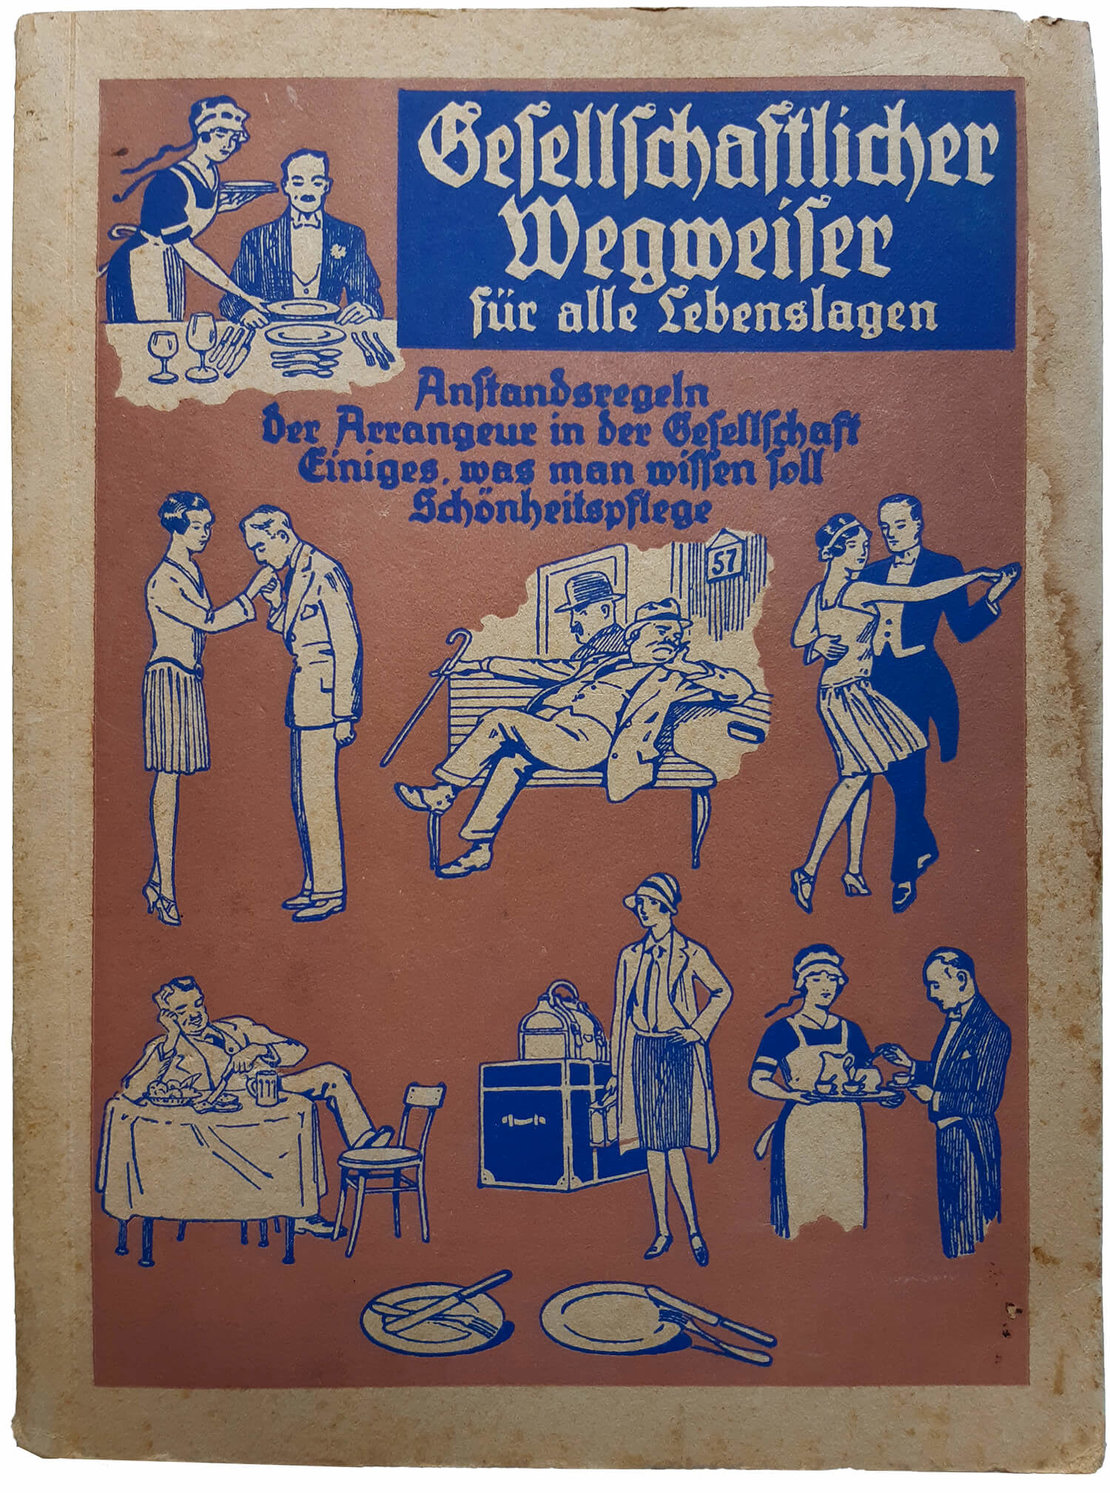 Buchcover: Gottfried Andreas (Hg.): Gesellschaftlicher Wegweiser für alle Lebenslagen, Weidlingau-Wien, 1930 (Zeichnungen von Fritz Schönpflug) 